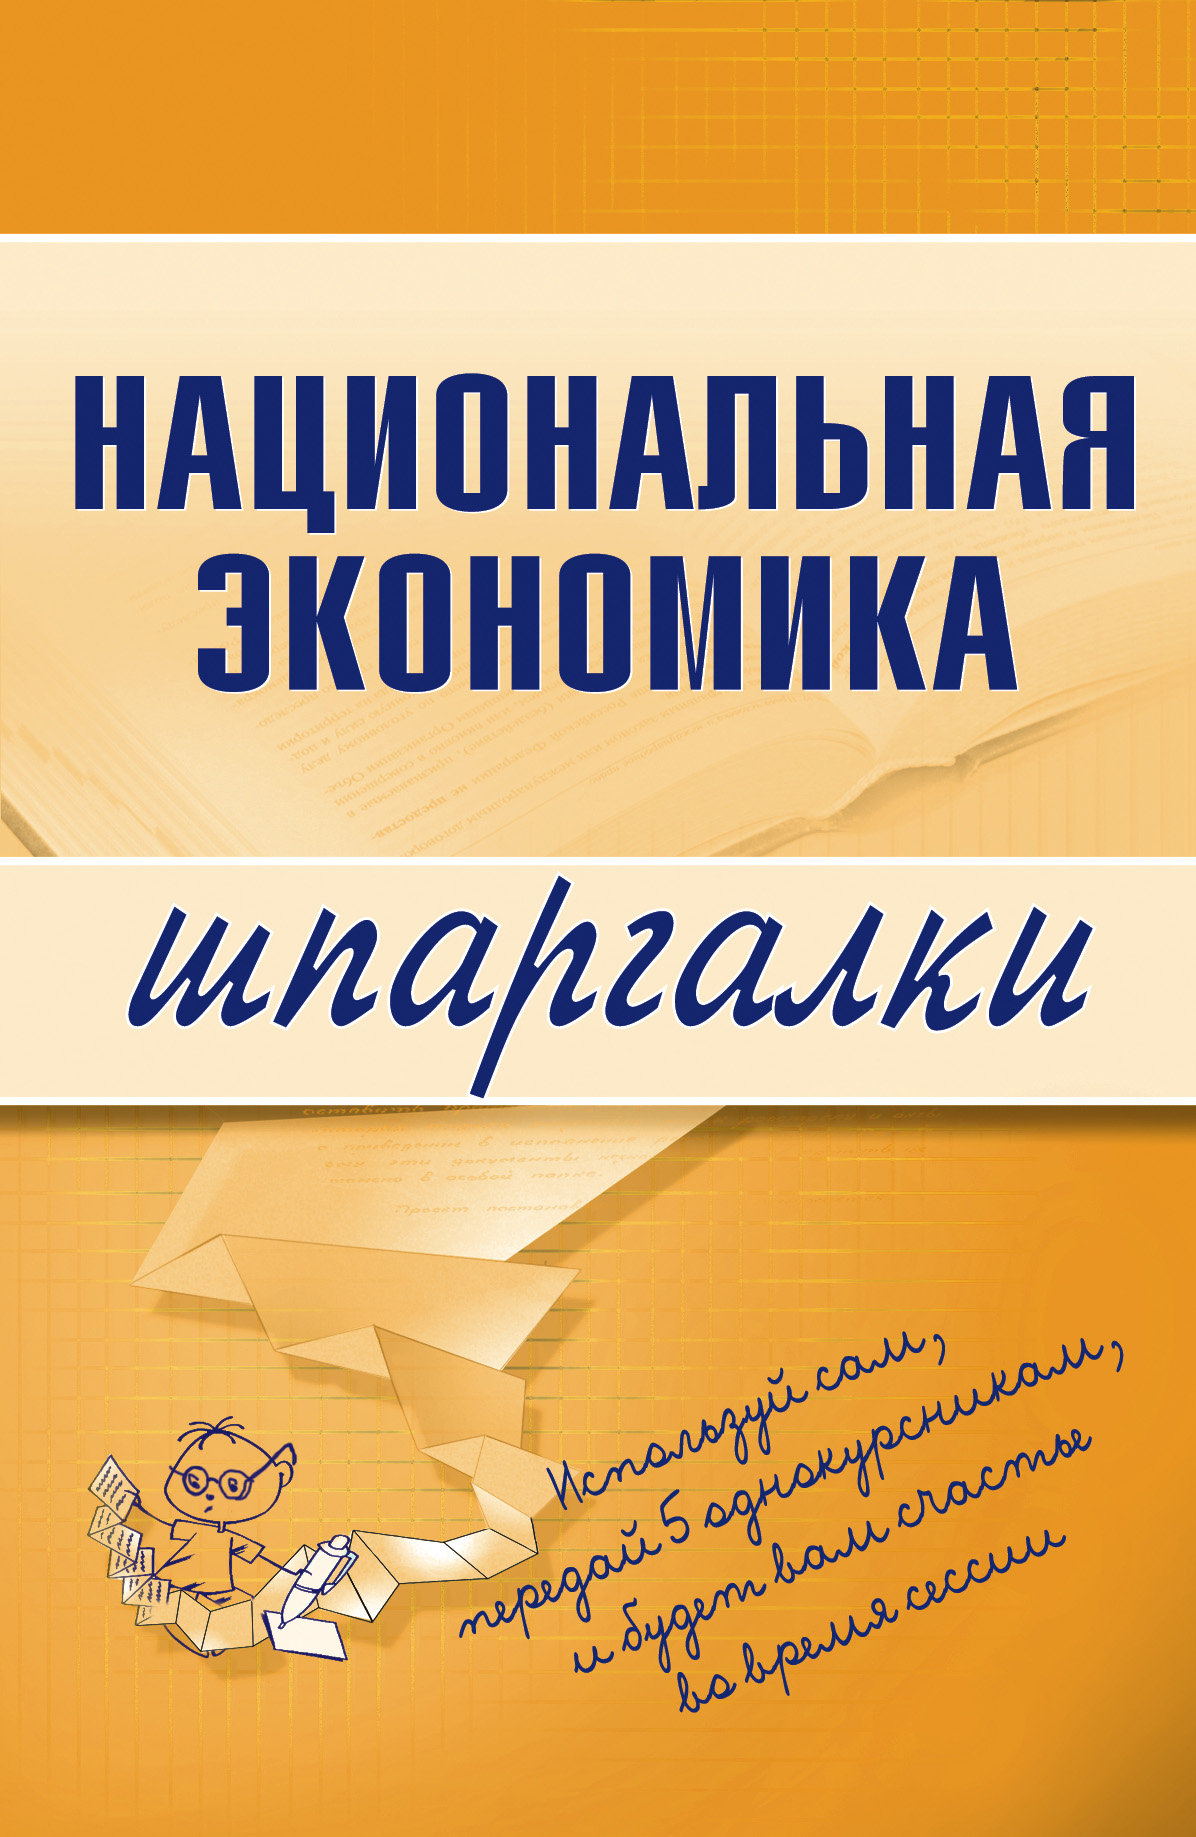 Книга Национальная экономика из серии , созданная Антон Кошелев, может относится к жанру Экономика. Стоимость электронной книги Национальная экономика с идентификатором 179757 составляет 24.95 руб.